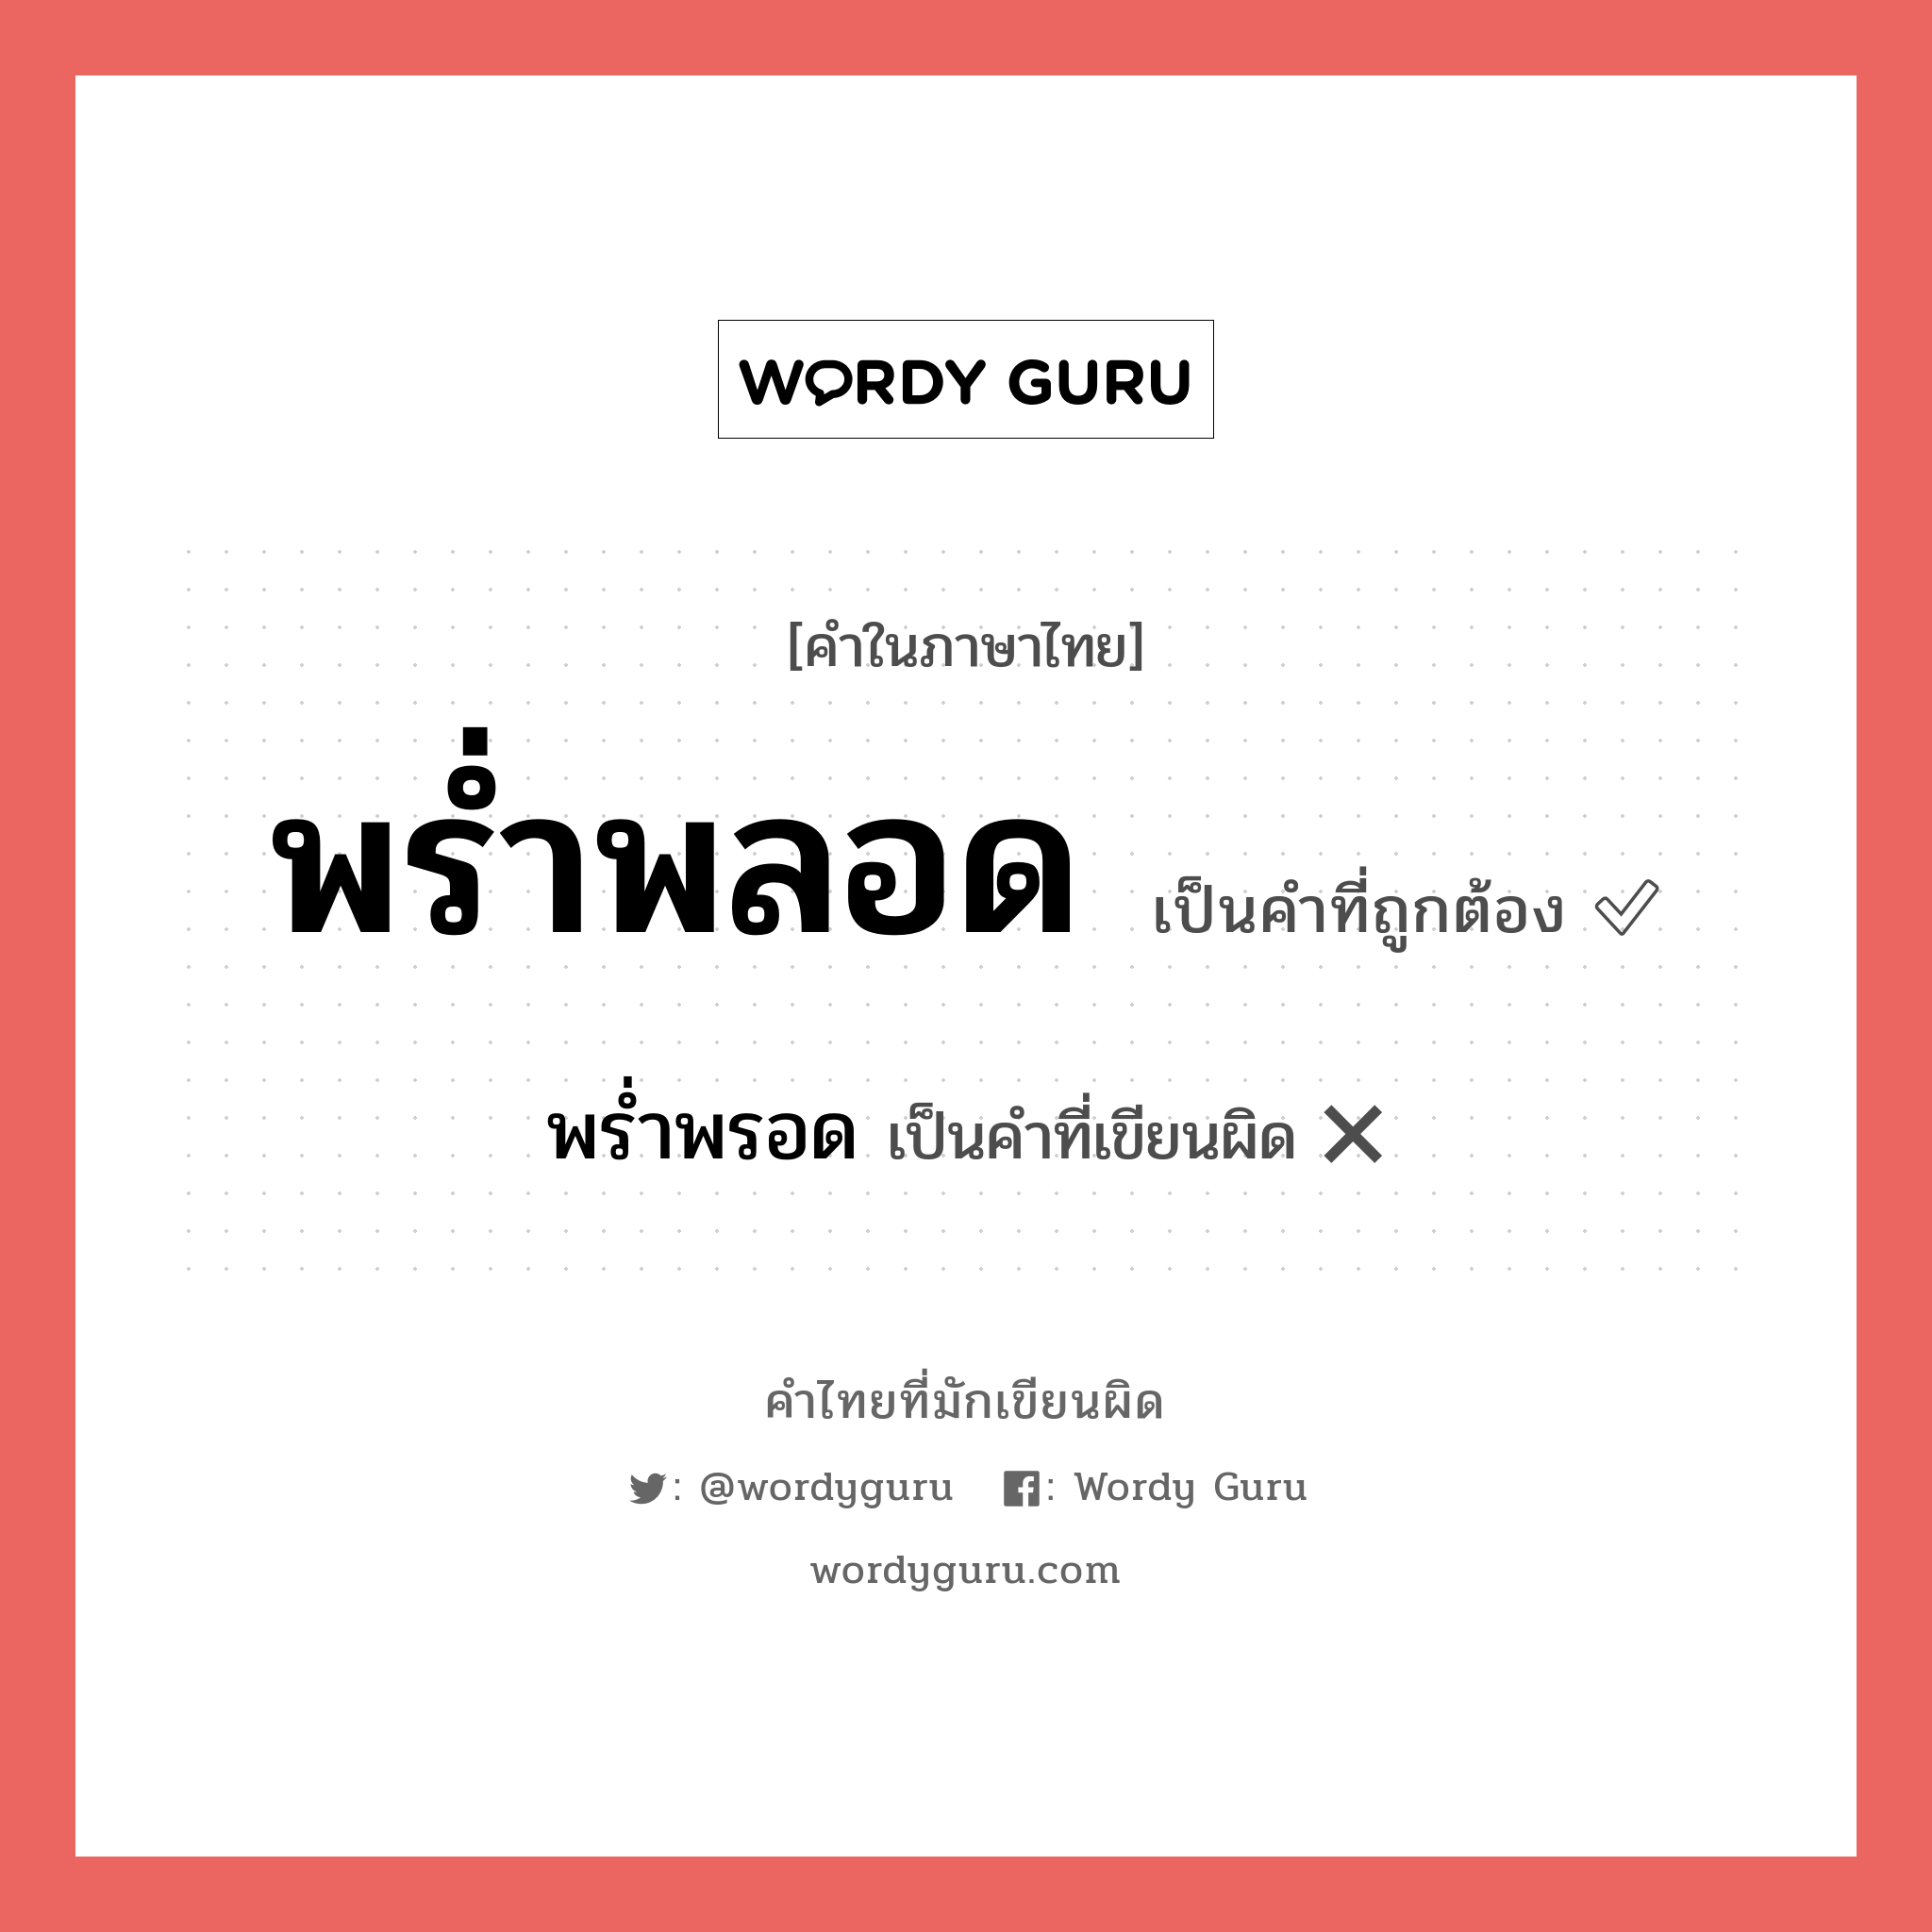 พร่ำพลอด หรือ พร่ำพรอด คำไหนเขียนถูก?, คำในภาษาไทยที่มักเขียนผิด พร่ำพลอด คำที่ผิด ❌ พร่ำพรอด